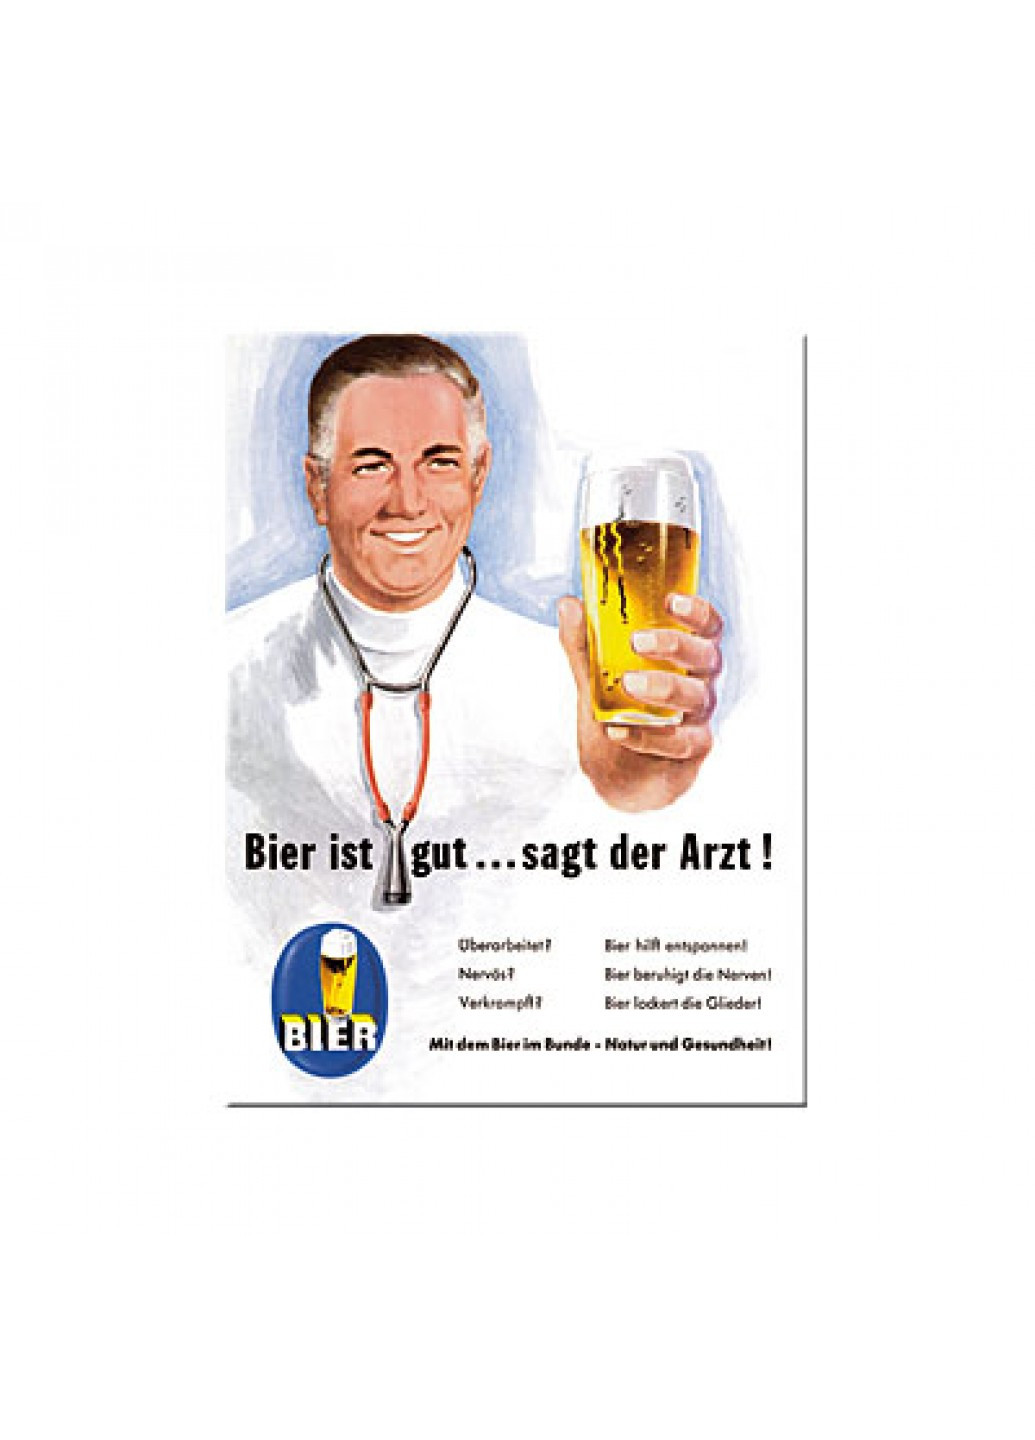 Магнит 8x6 см "Bier und Spirituosen ist gut. sagt der Arzt" (14114) Nostalgic Art (215853600)